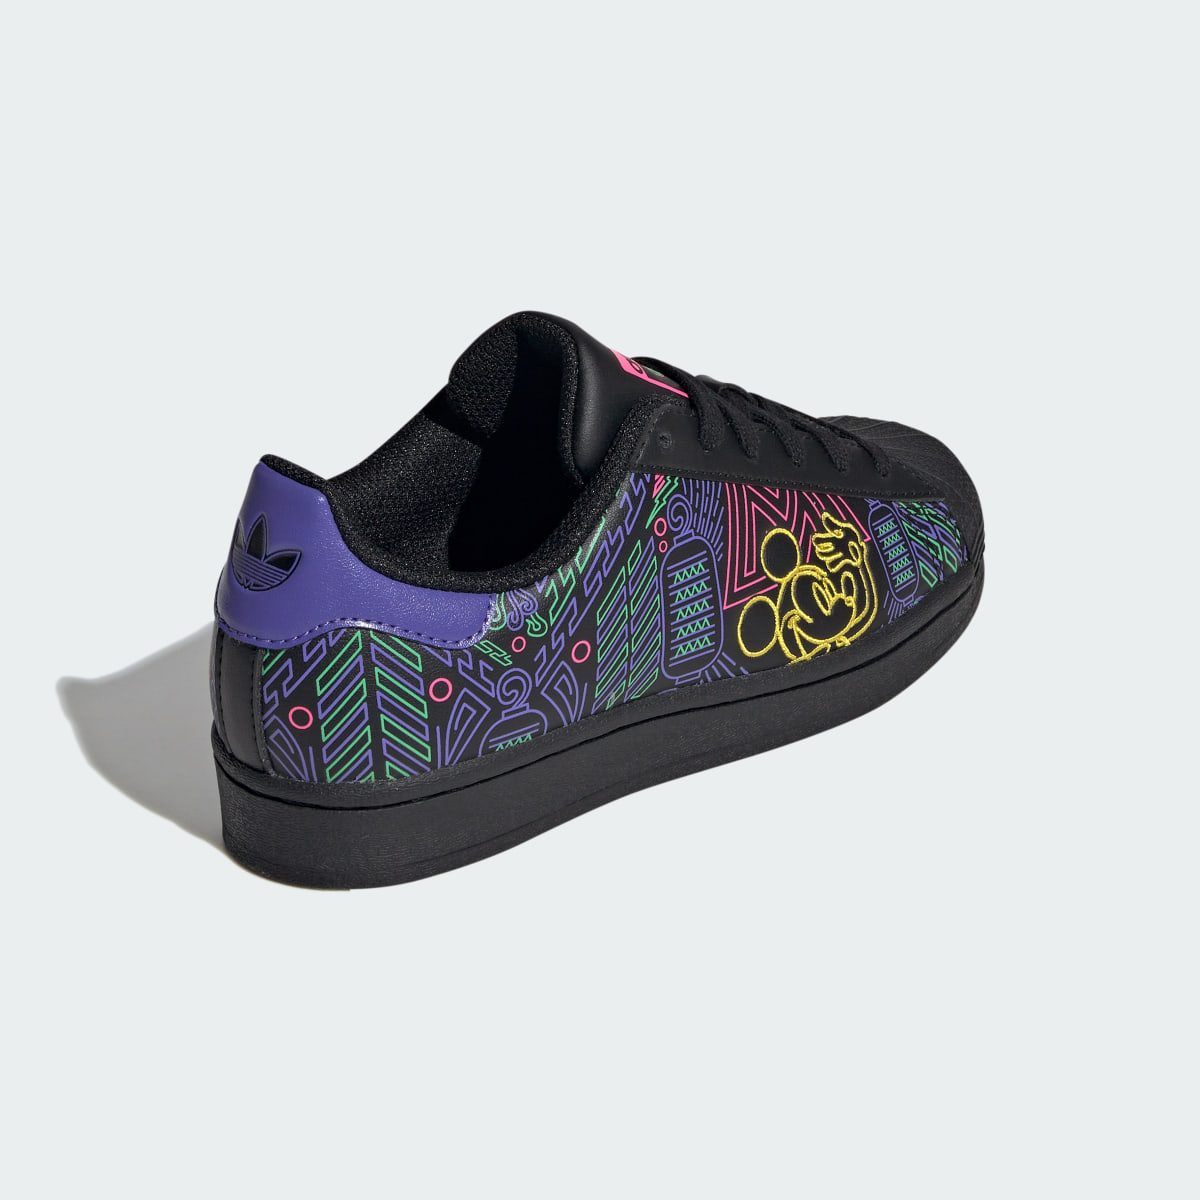 Adidas Originals x Disney Mickey Superstar Shoes Kids. 7